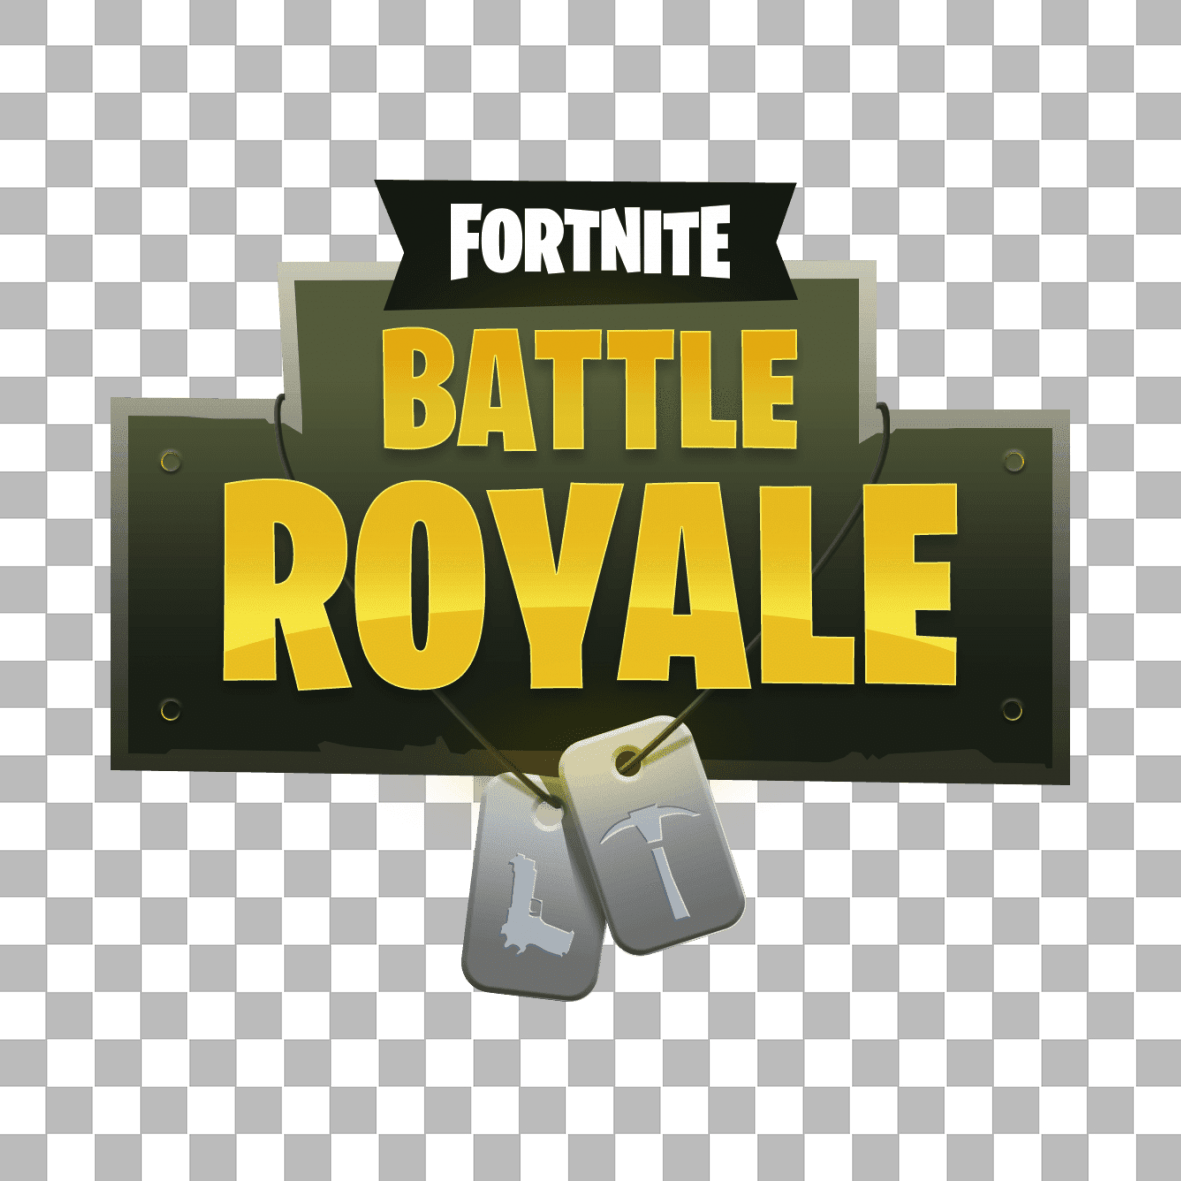 New Fortnite Battle Royale Logo - Designer Briefcase: Fortnite Battle Royale Logo PNG